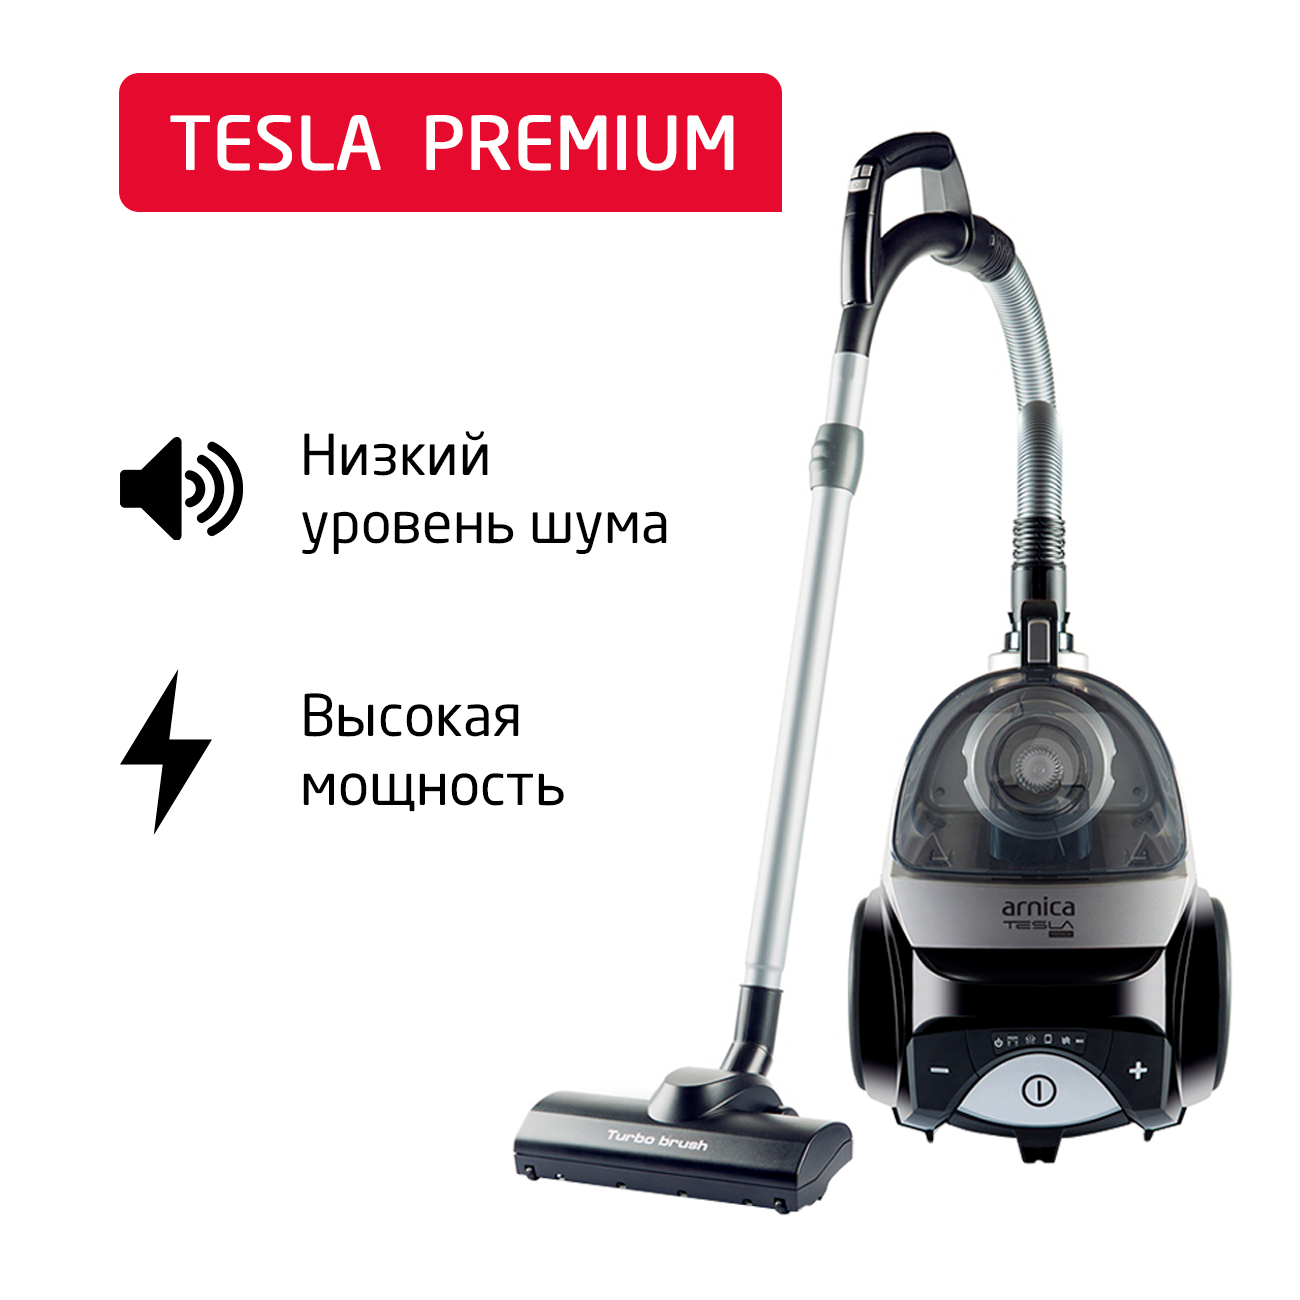 Пылесос ARNICA Tesla Premium серебристый, черный пылесос arnica tesla premium фиолетовый